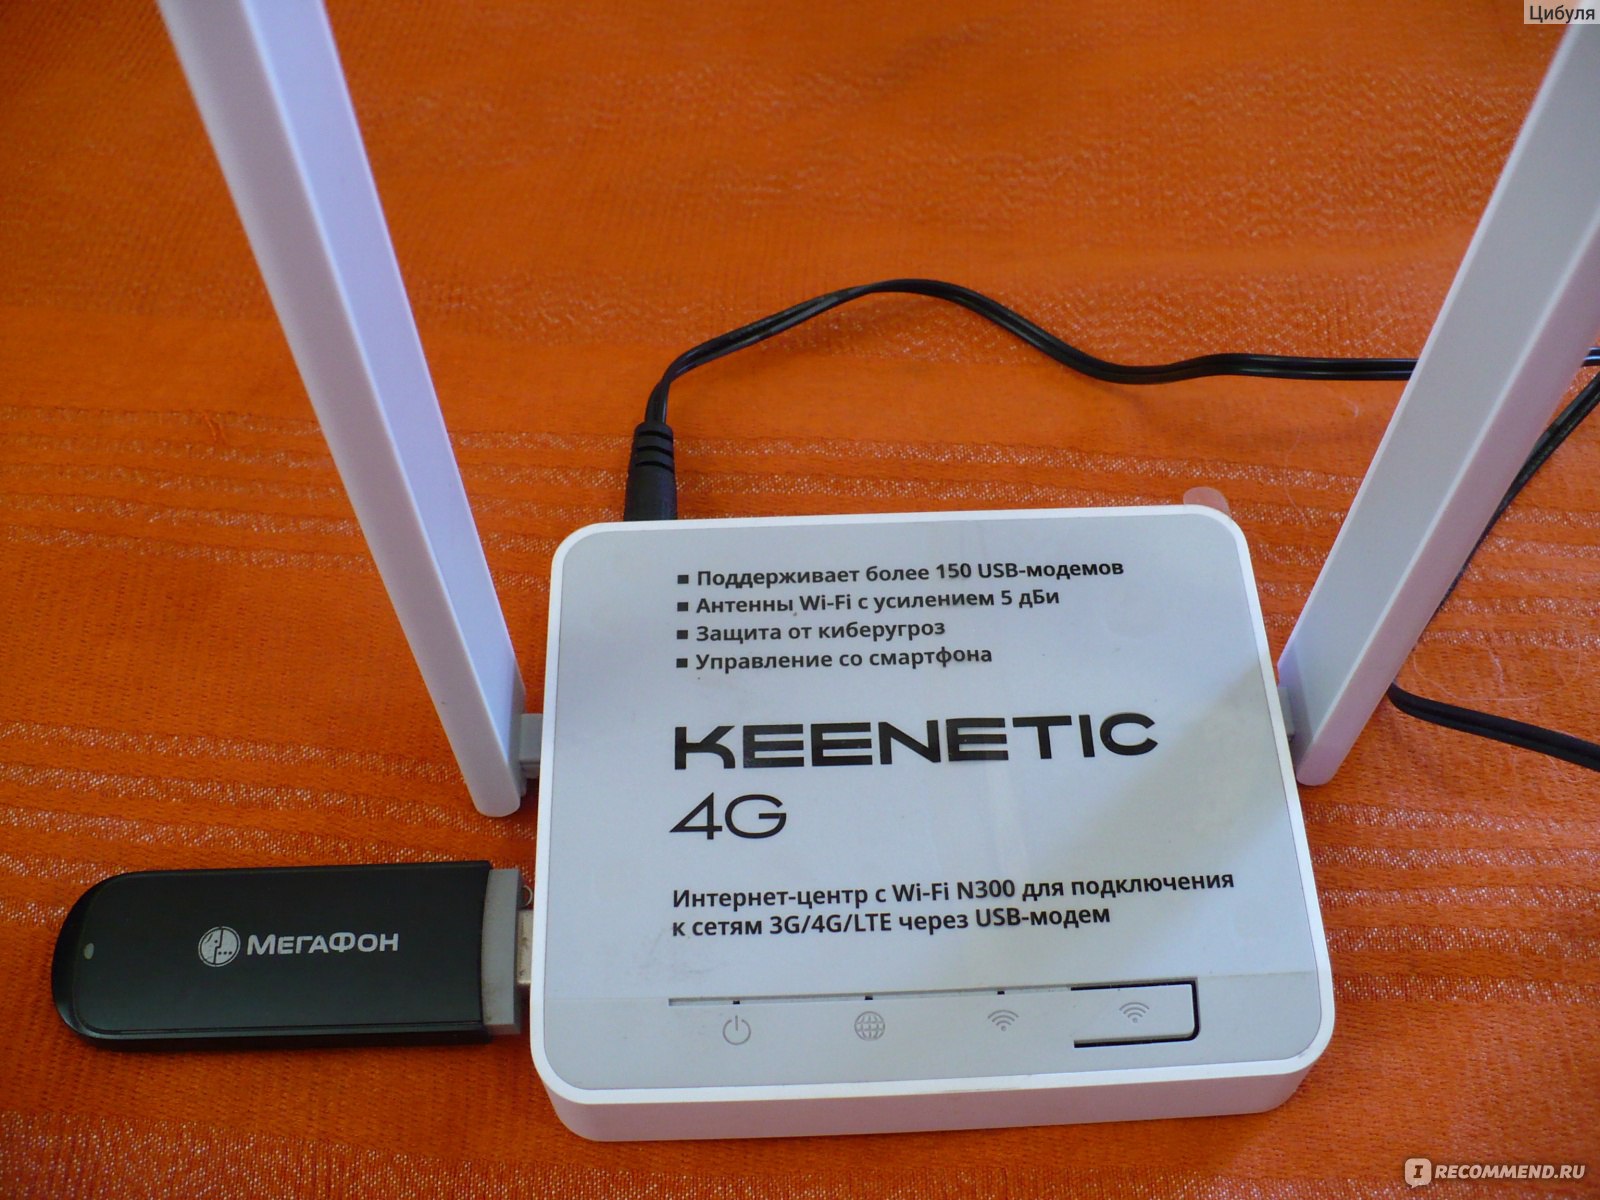 Купить модем днс. DNS Modem 4g роутер. Keenetic 4g c USB. МЕГАФОН модем 4g WIFI. Wi-Fi роутер Keenetic Runner 4g, n300, белый [KN-2211].